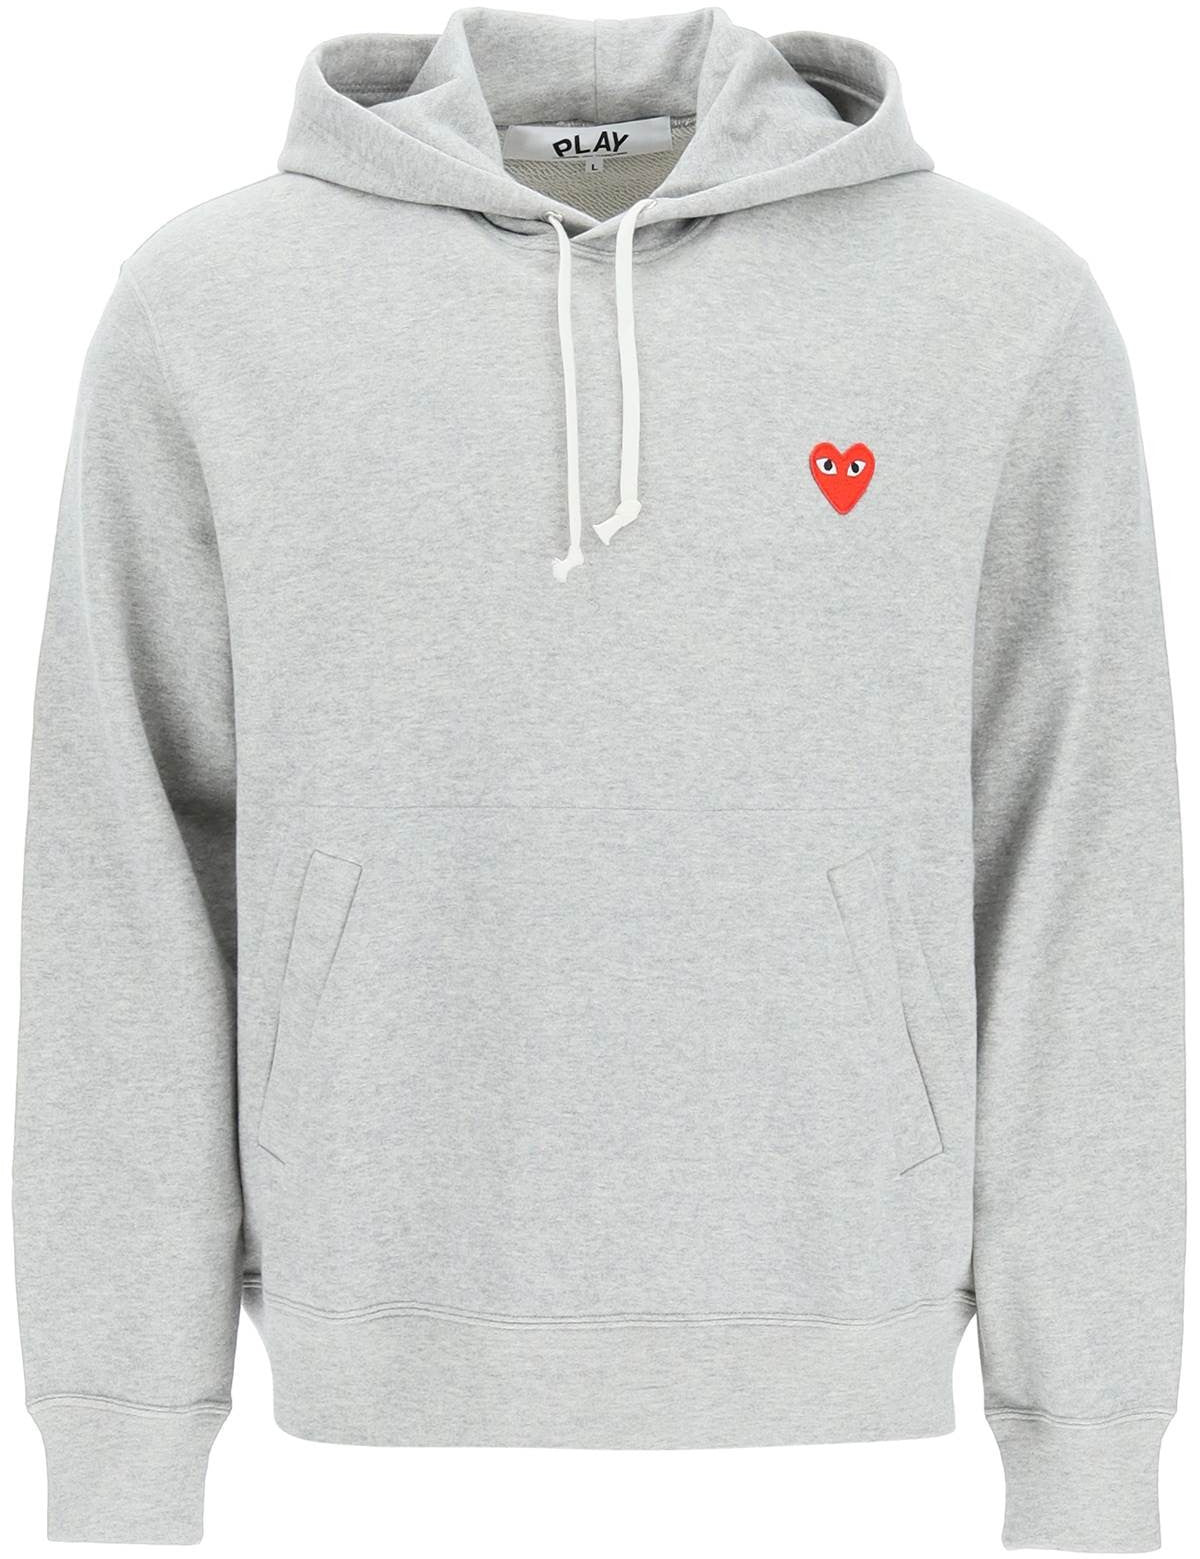 heart-patch-hoodie.jpg